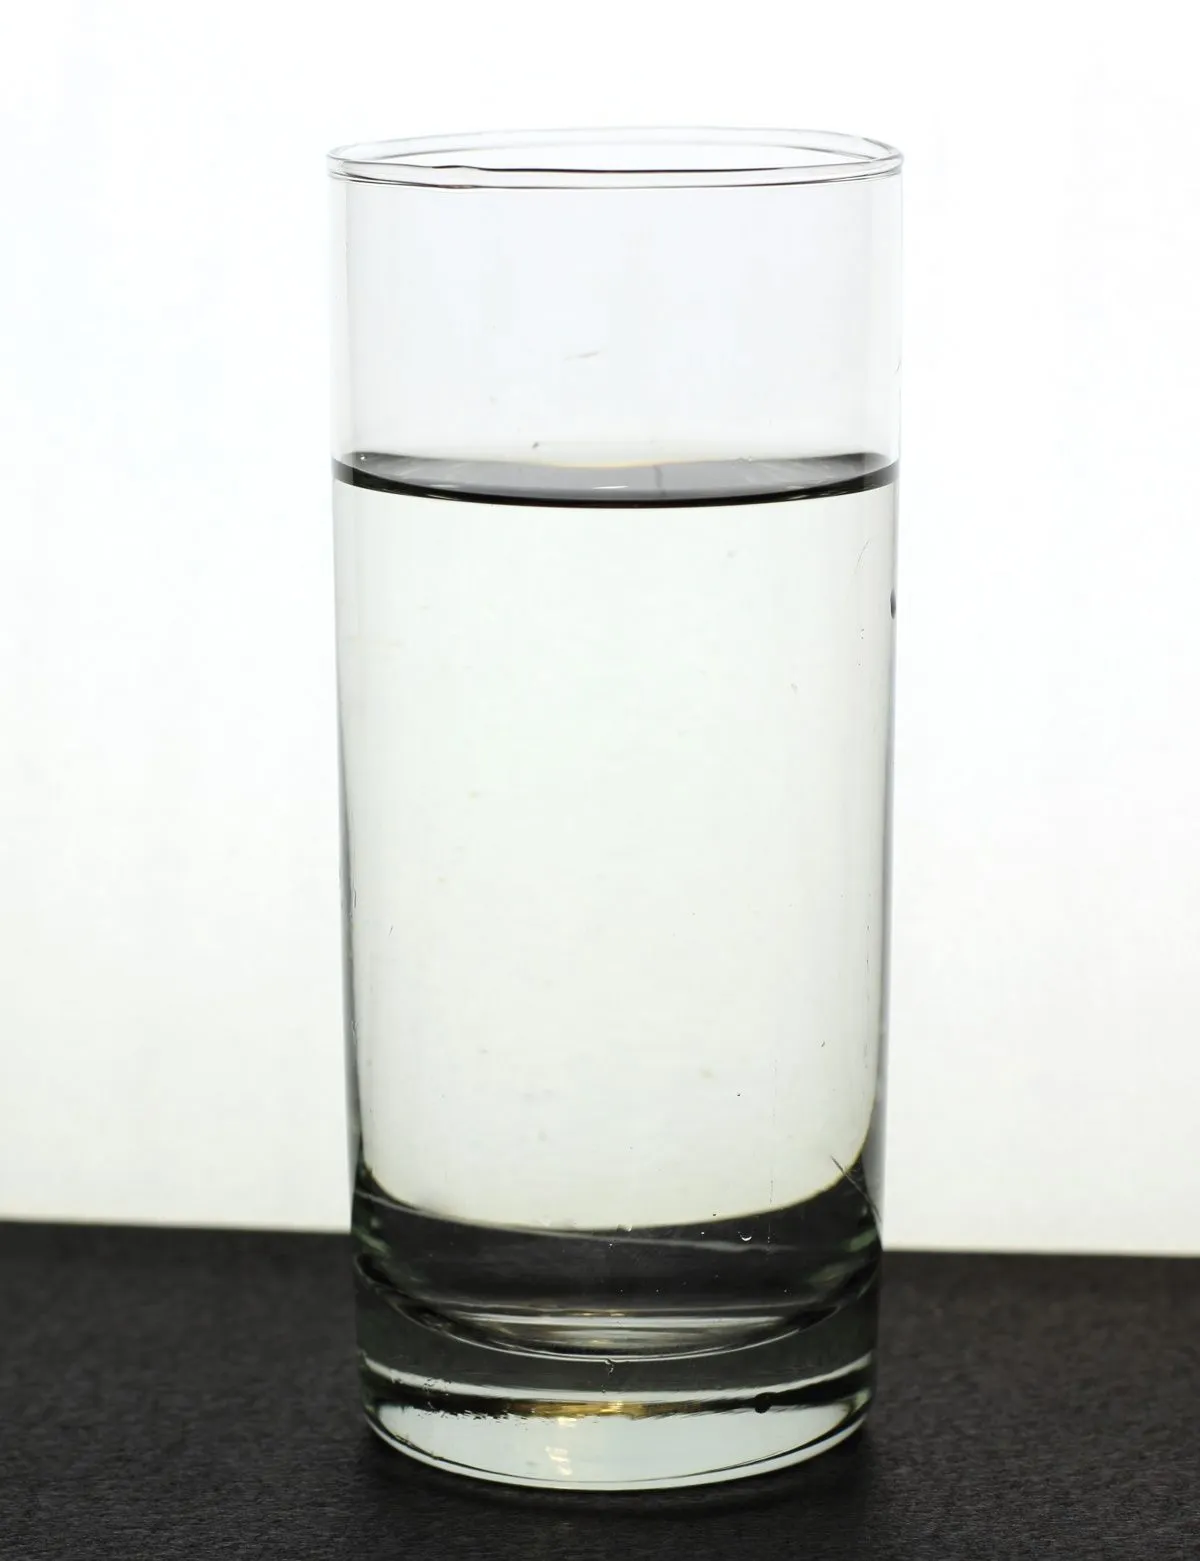 Un vaso con agua, por favor | Wiki Creepypasta | Fandom powered by ...